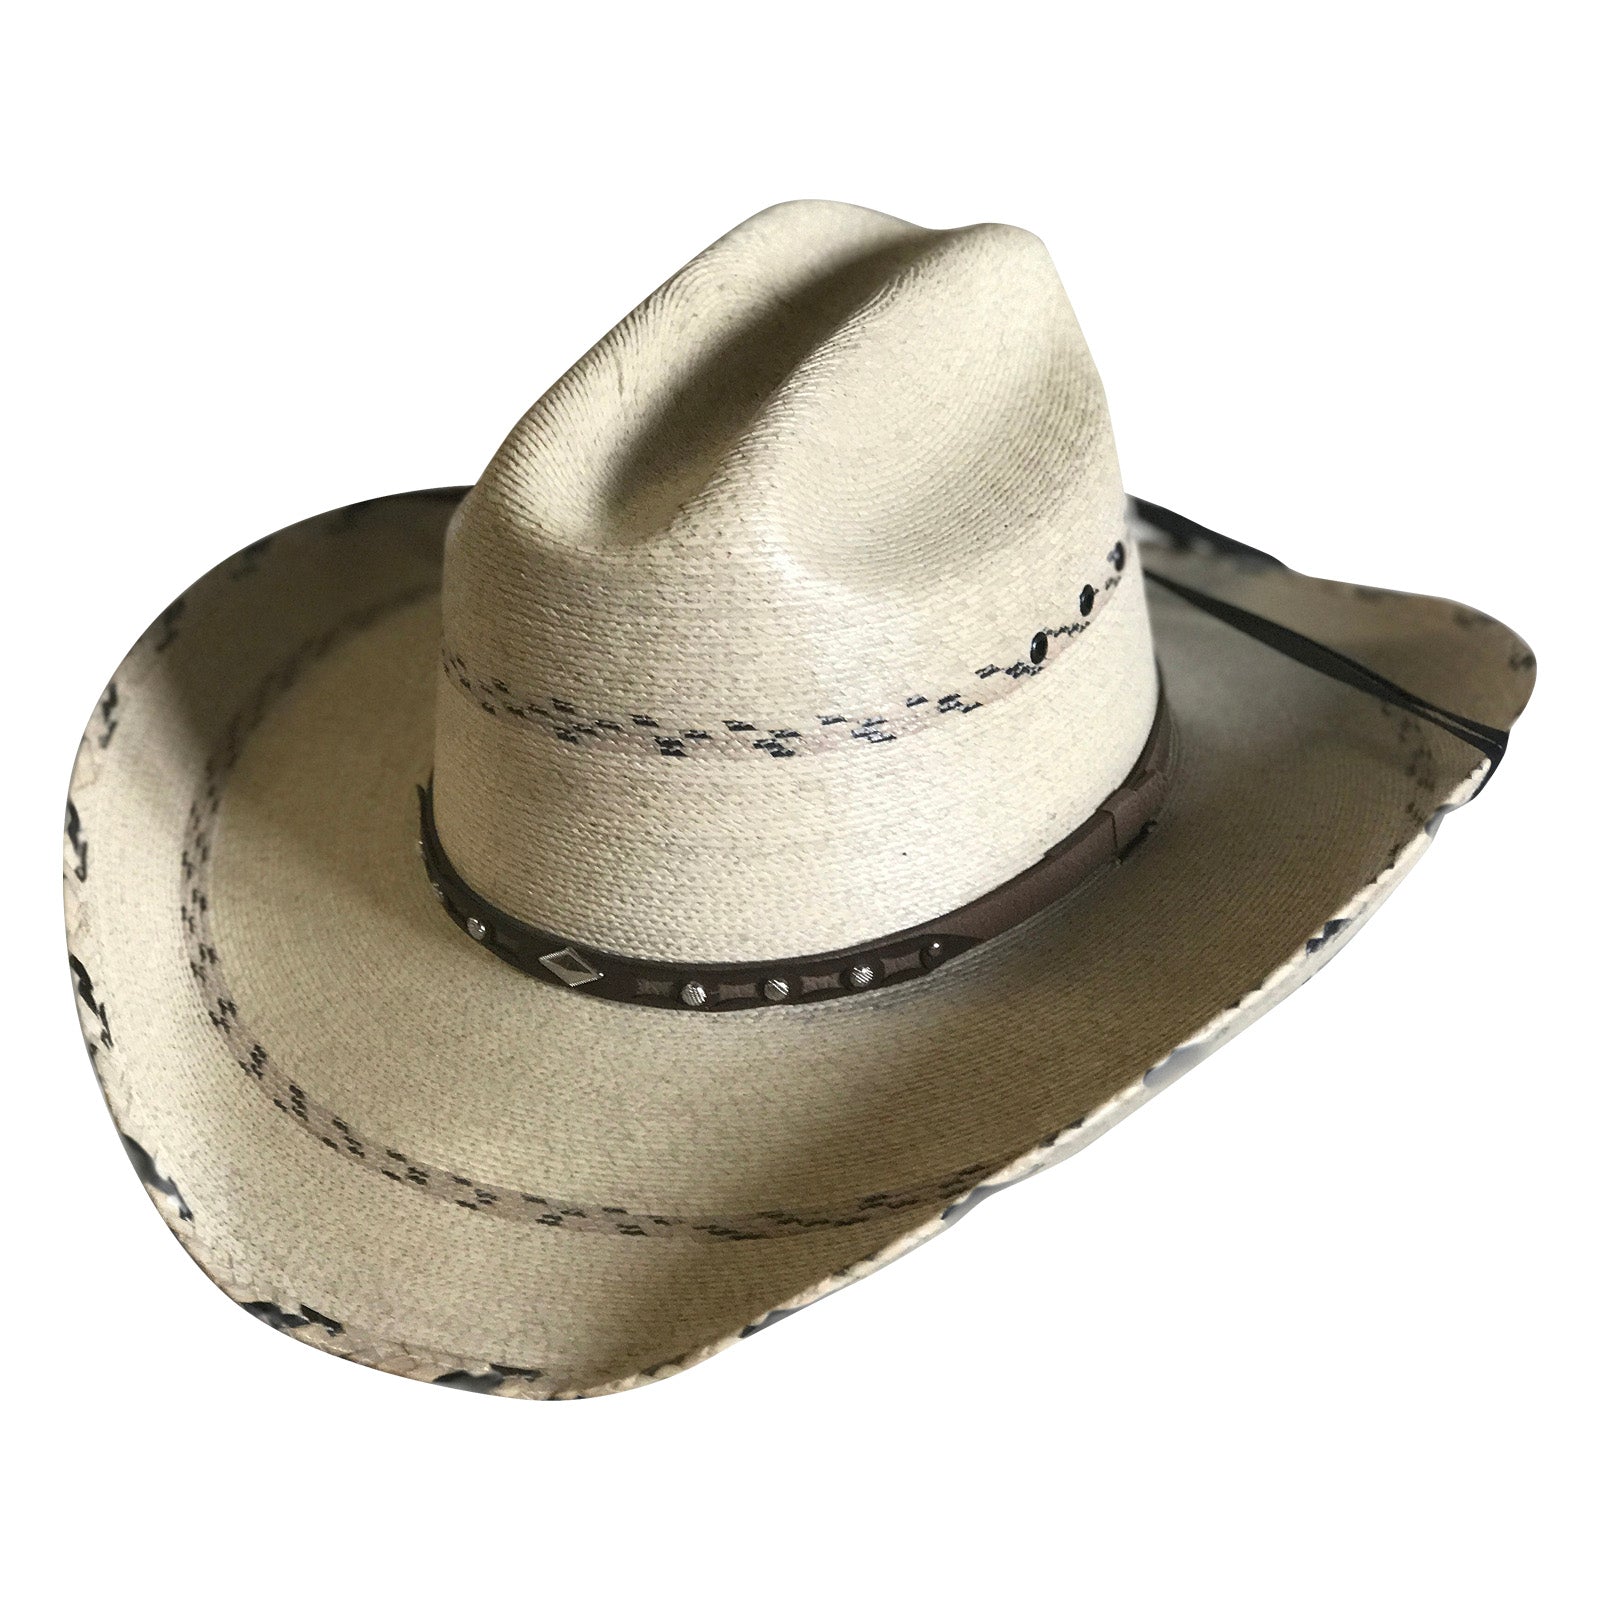 Cattleman Cowboy Hat band